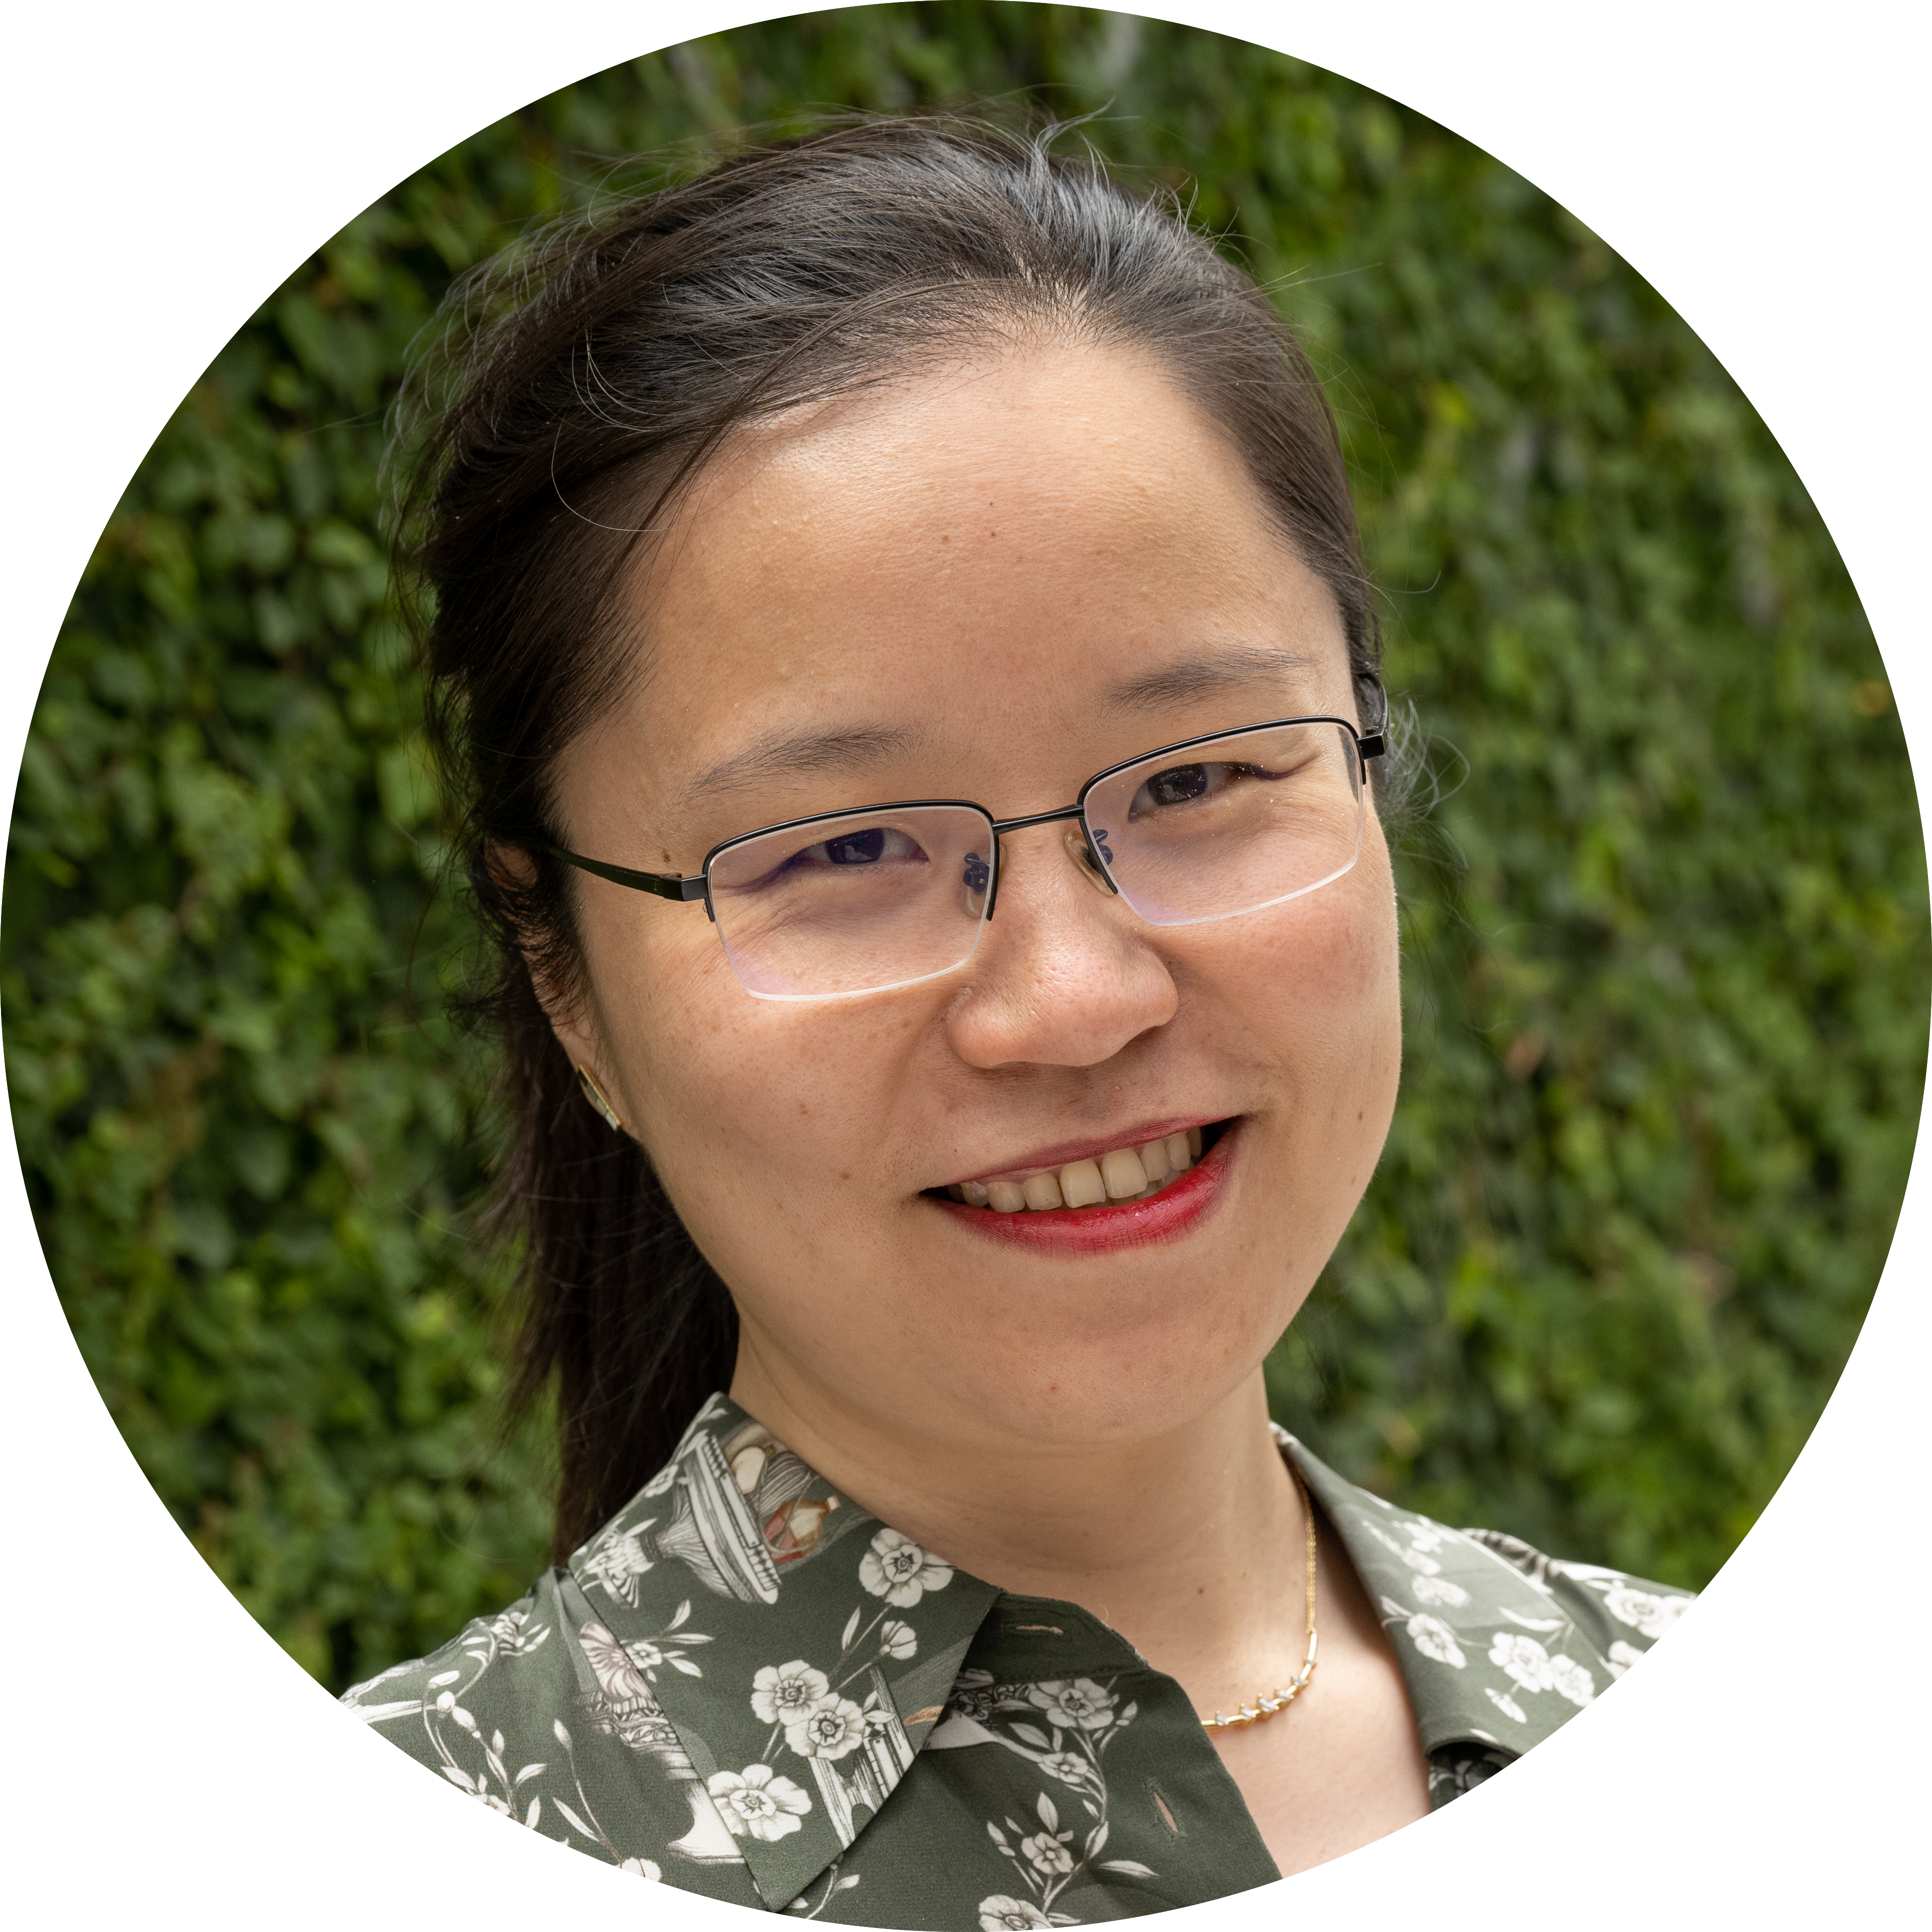 Qian Yang, AI2050 Early Career Fellow